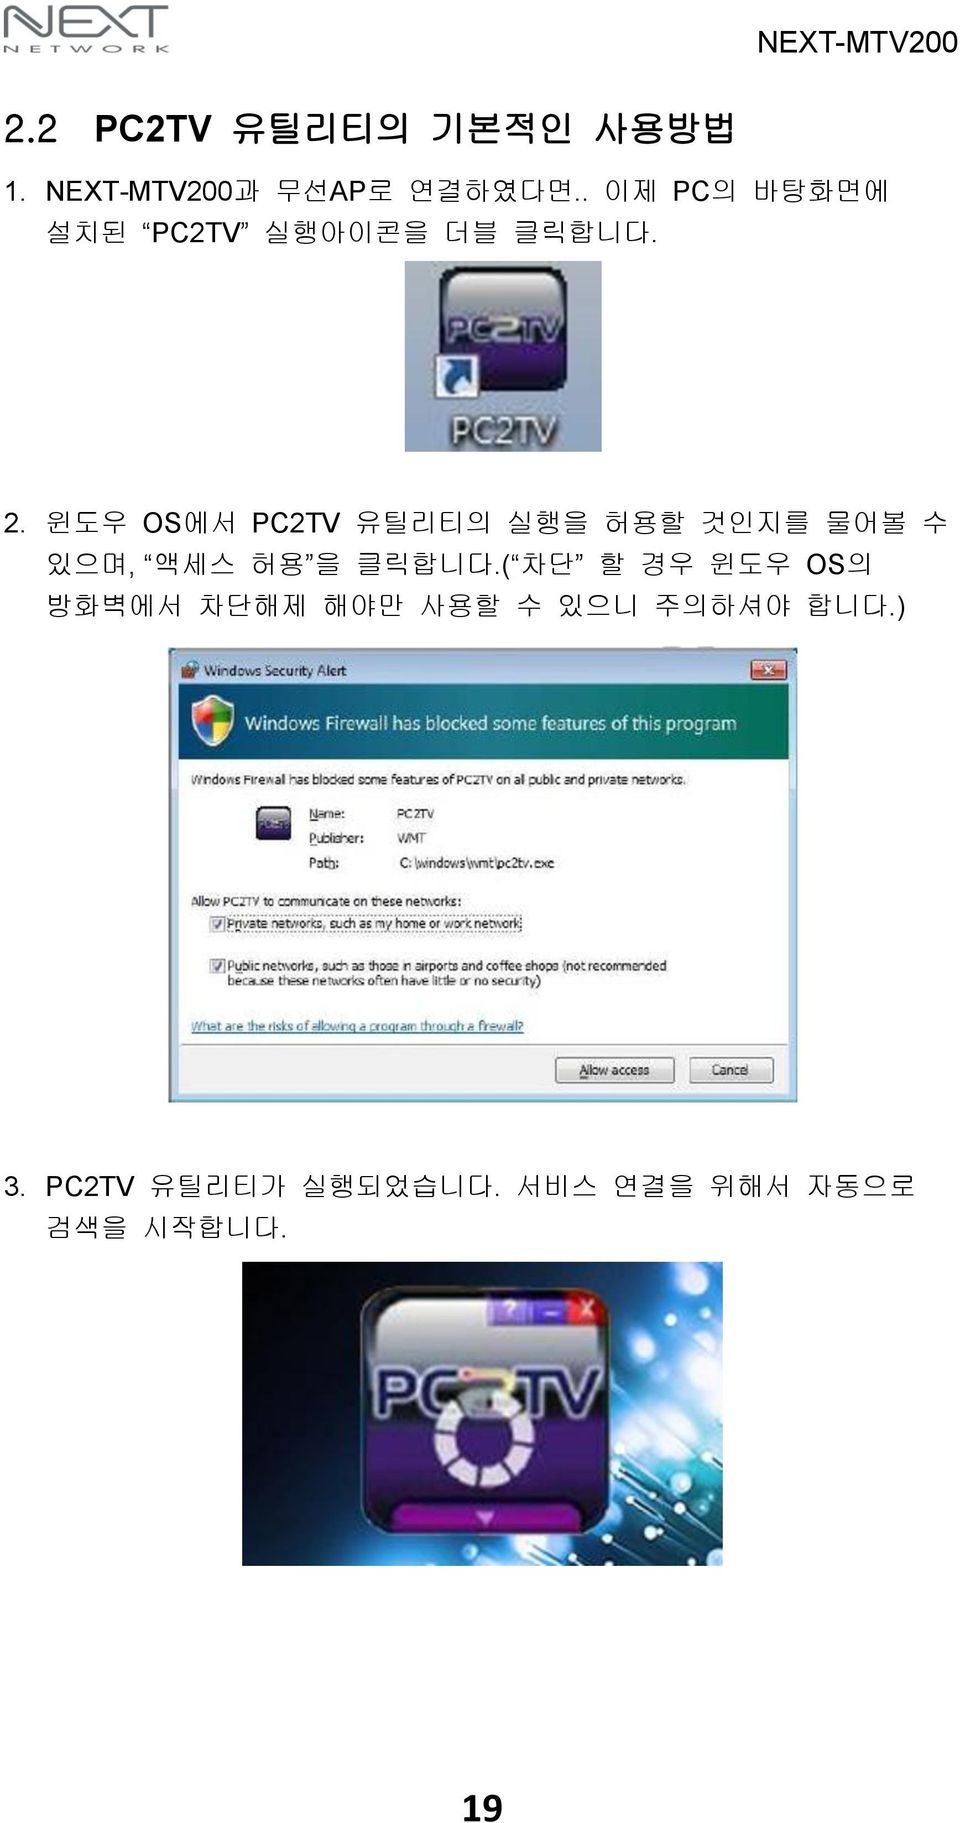 윈도우 OS에서 PC2TV 유틸리티의 실행을 허용할 것인지를 물어볼 수 있으며, 액세스 허용 을 클릭합니다.